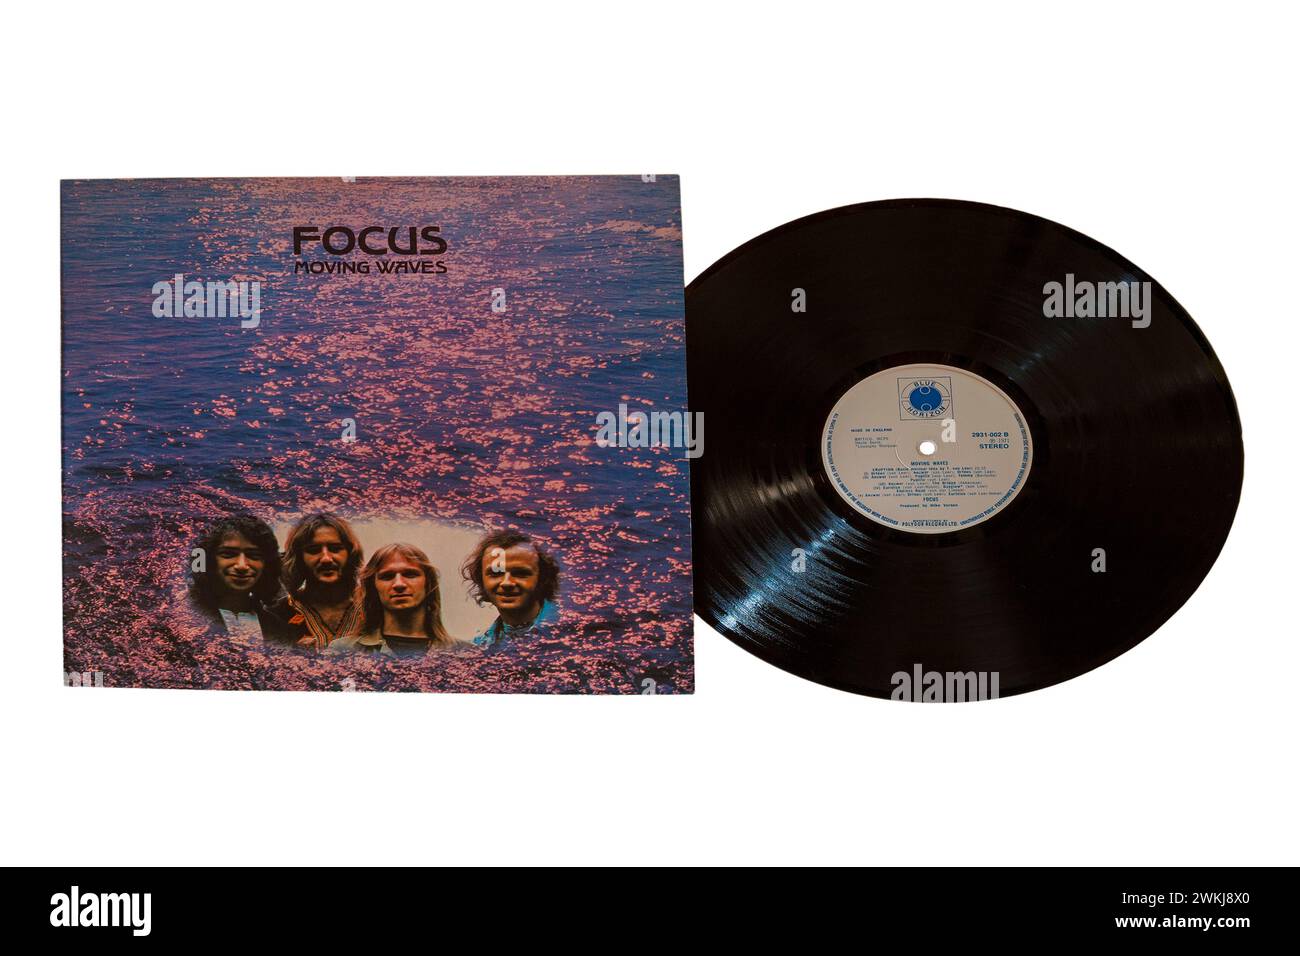 Focus Moving Waves album vinyle couverture LP isolé sur fond blanc - 1971 Banque D'Images